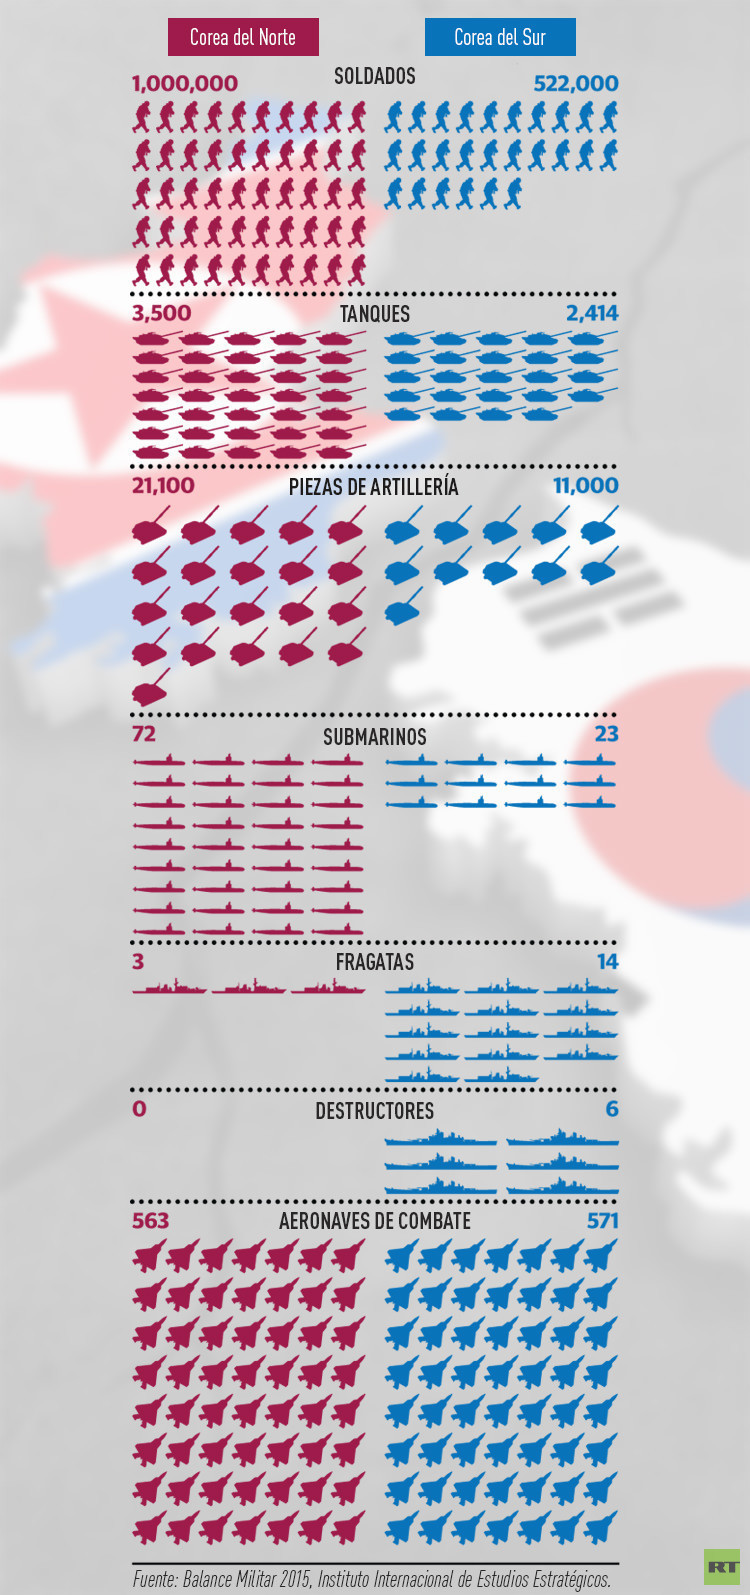 La península coreana, al borde de una guerra